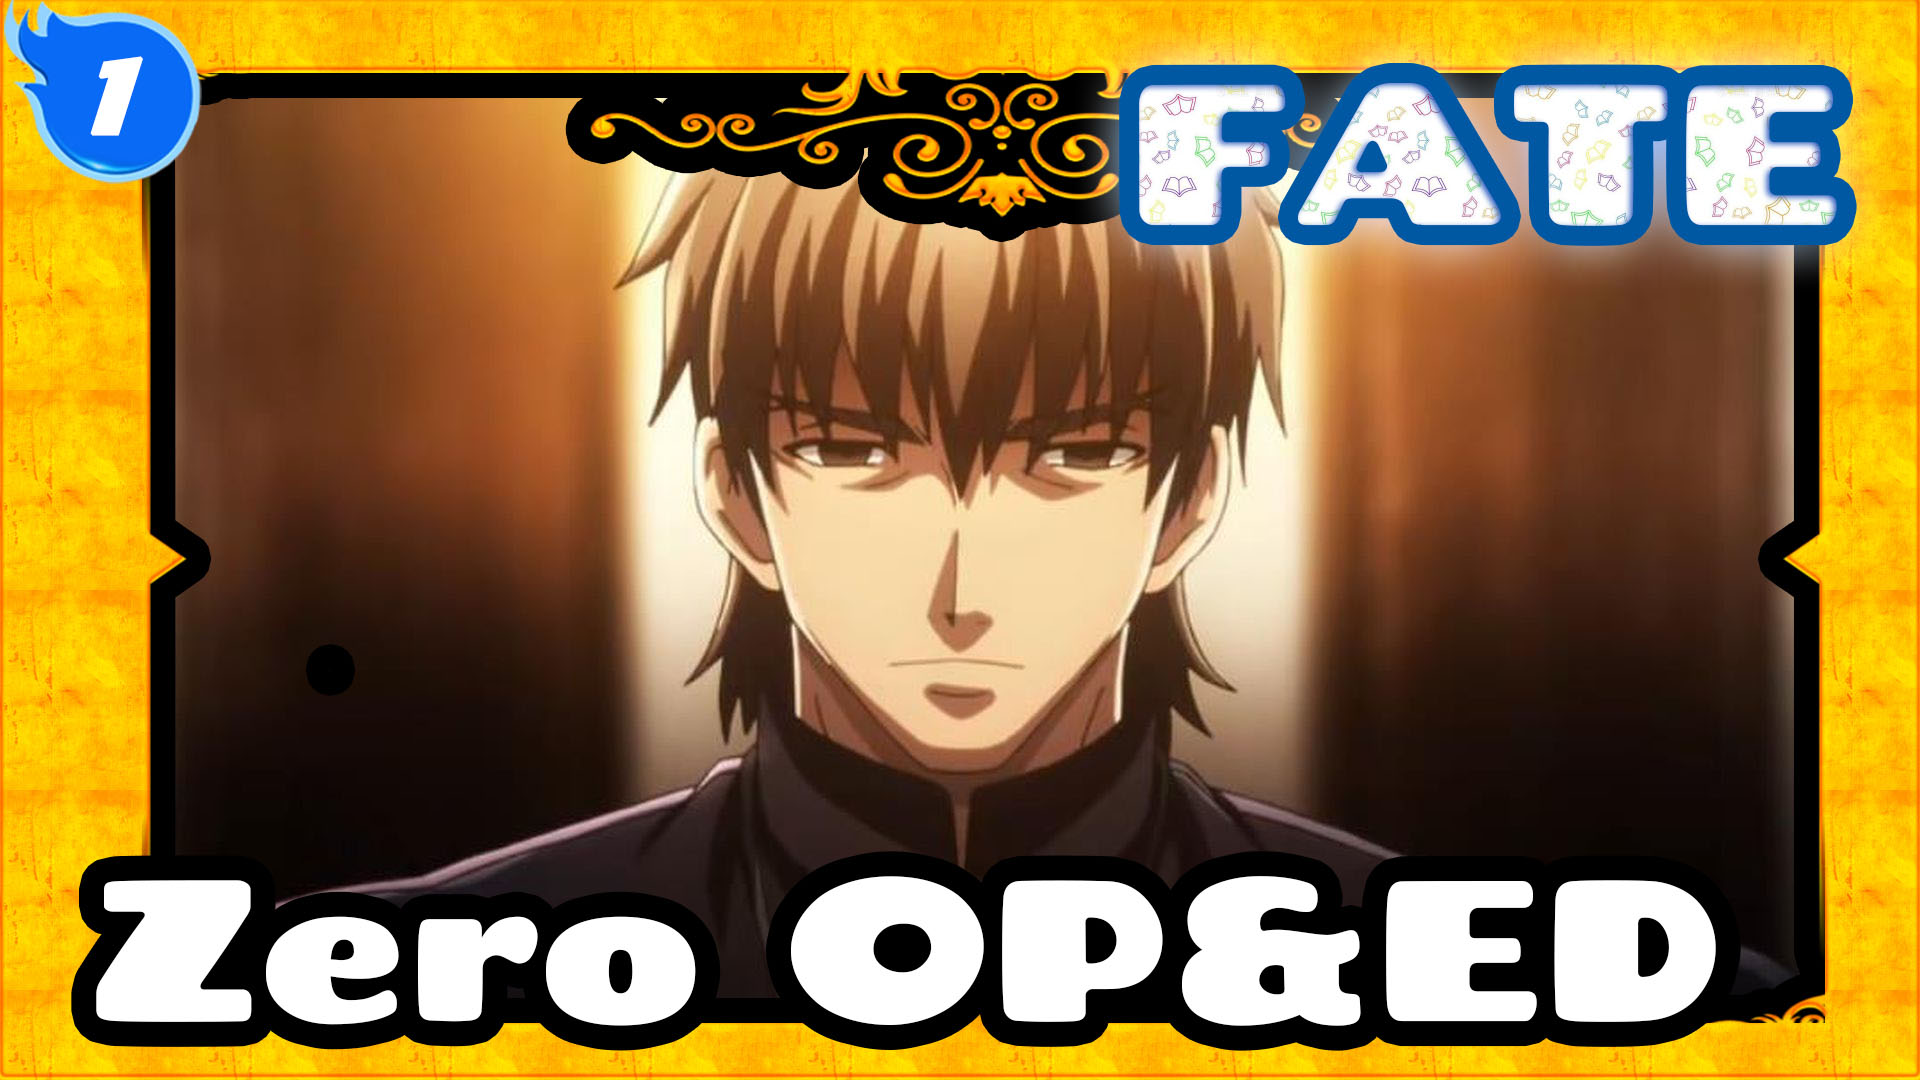 Fate 1080p Fate Zero Op Ed Collection Most Complete Version L1 Bilibili